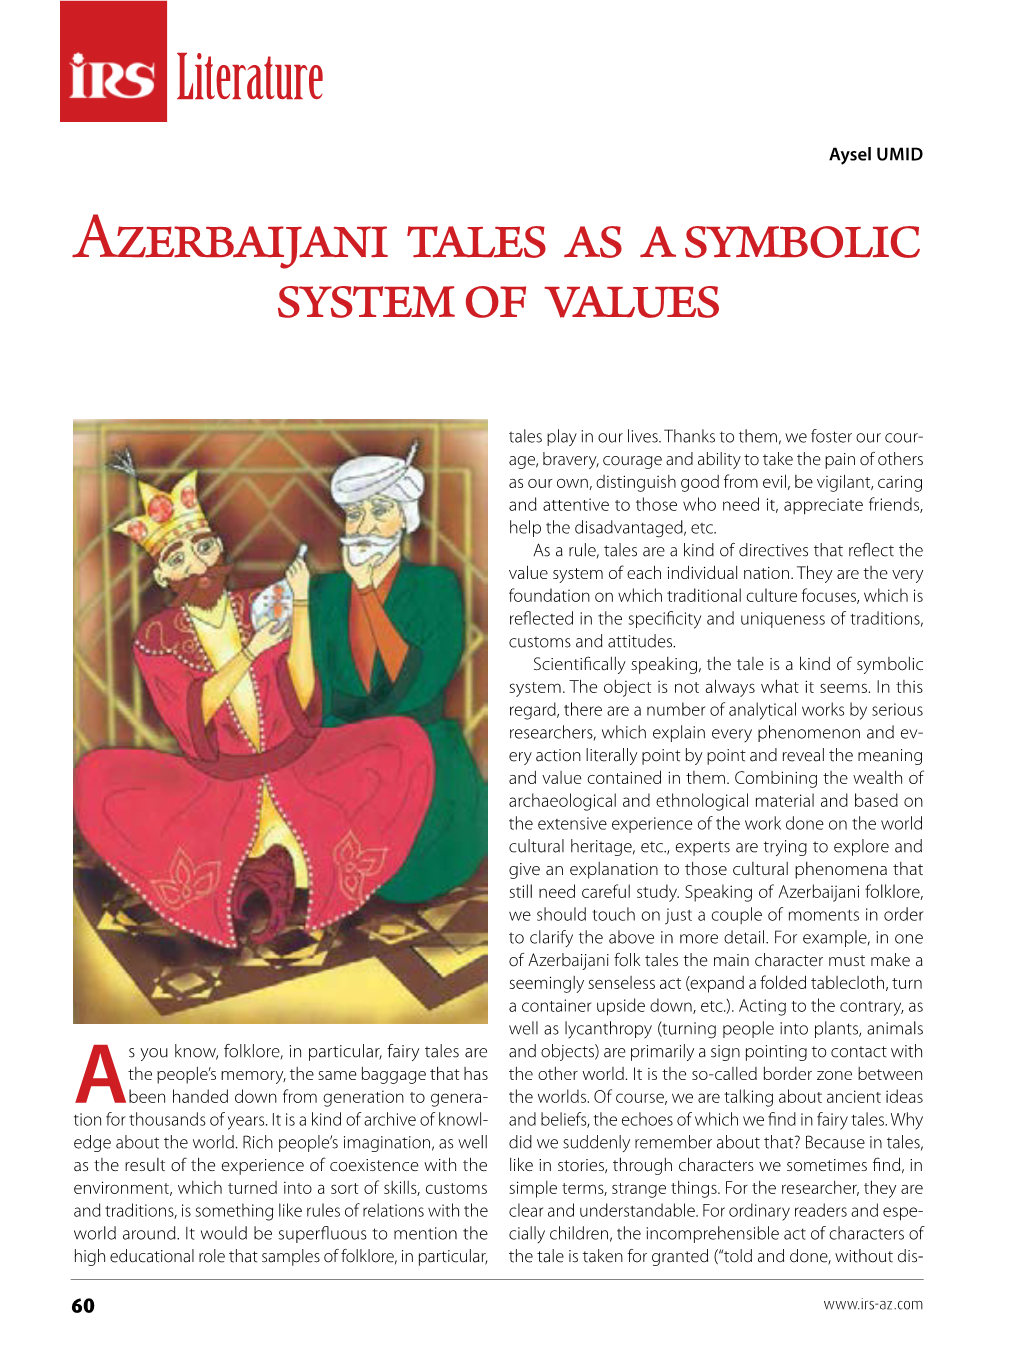 Azerbaijani Tales As a Symbolic System of Values